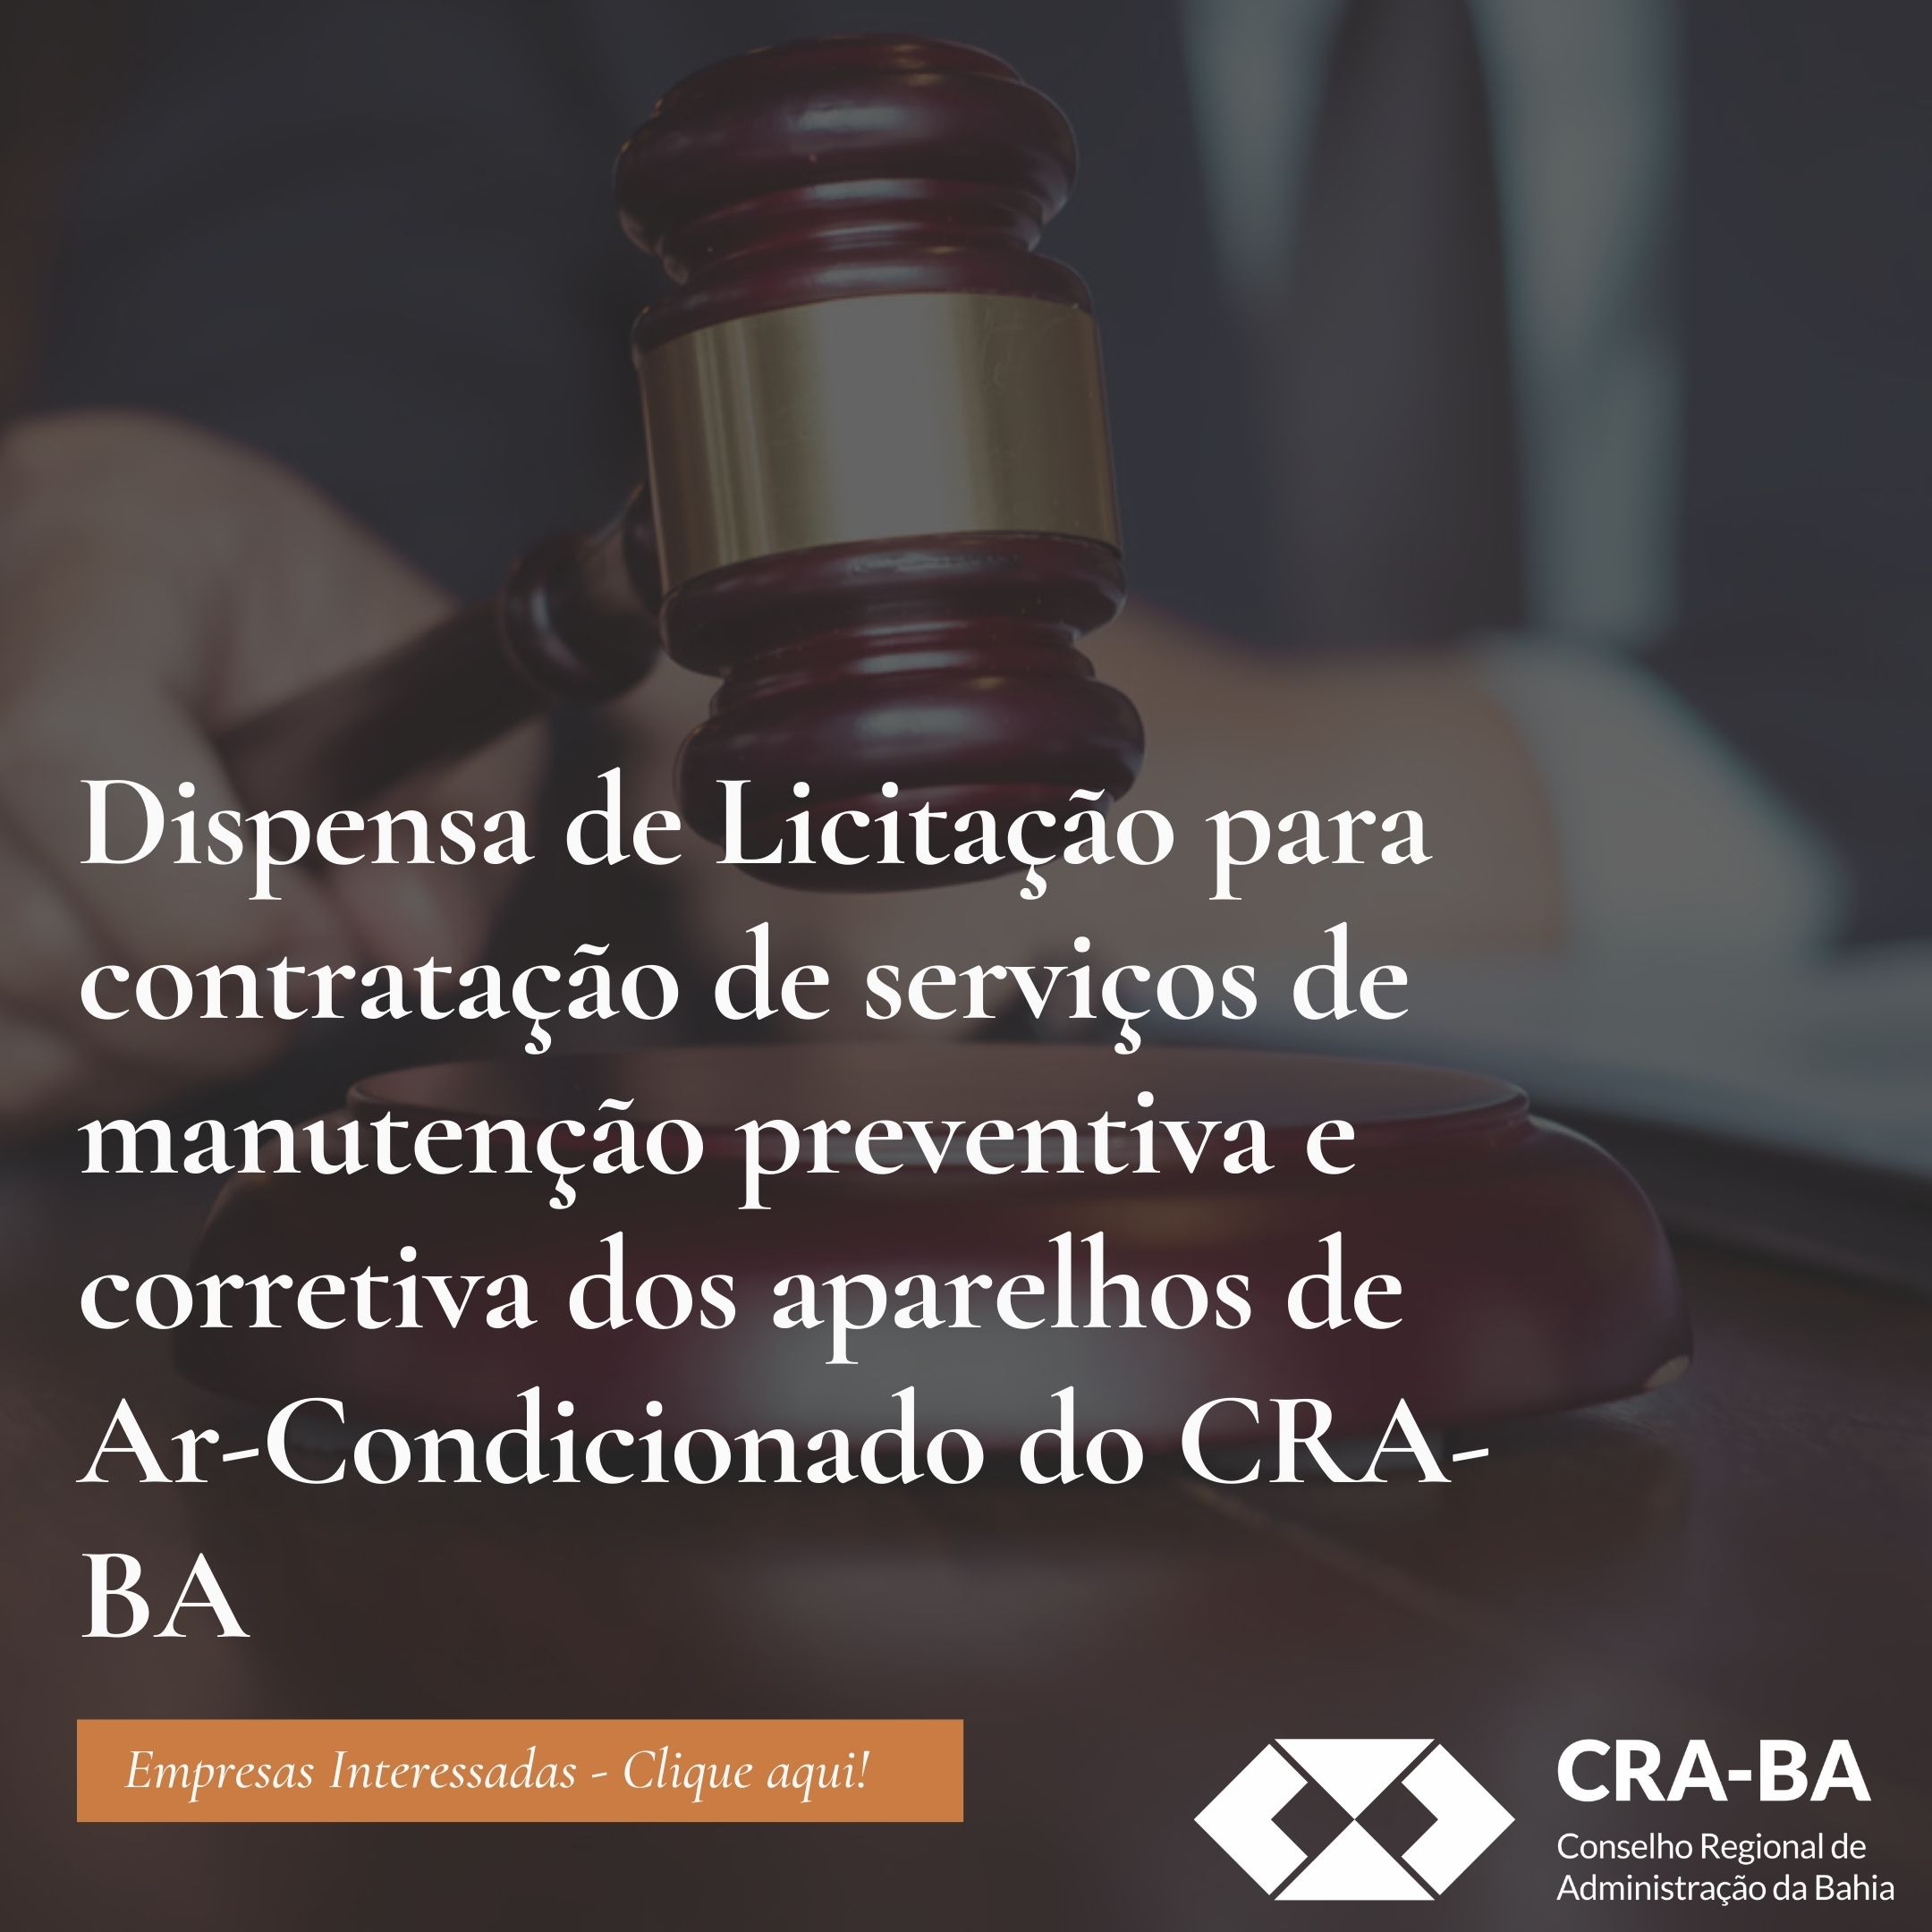 No momento você está vendo Dispensa de Licitação para contratação de serviços de manutenção preventiva e corretiva dos aparelhos de Ar-condicionado do CRA-BA